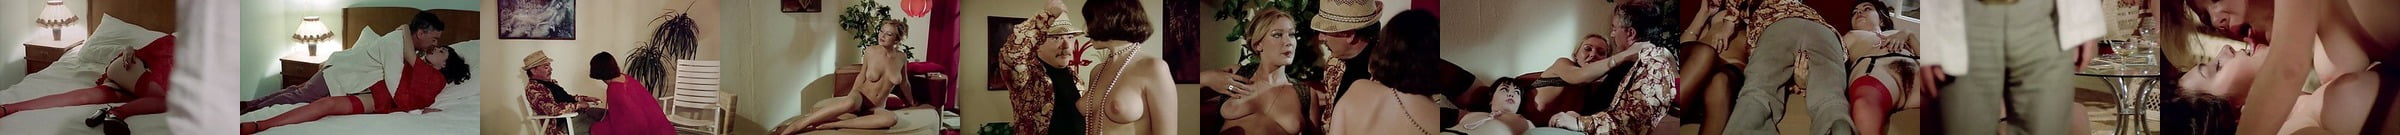 Sophia Loren In Lingerie And Nylons Free Porn 28 Xhamster Xhamster